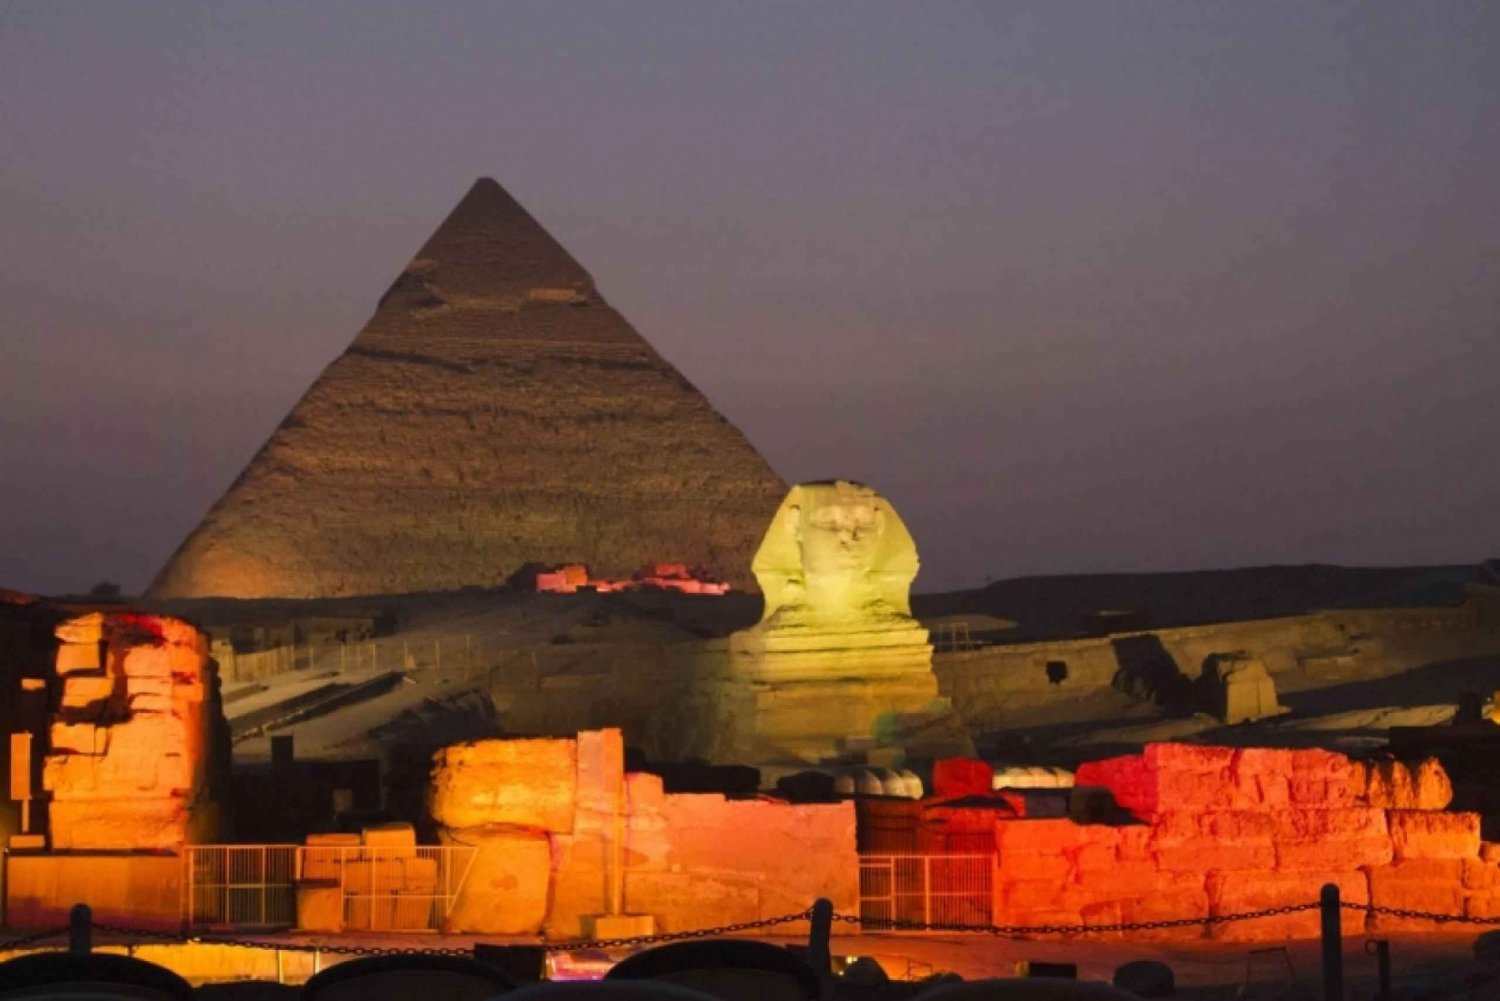 Cairo: Pyramids of Giza Sound & Light Show with City Tour